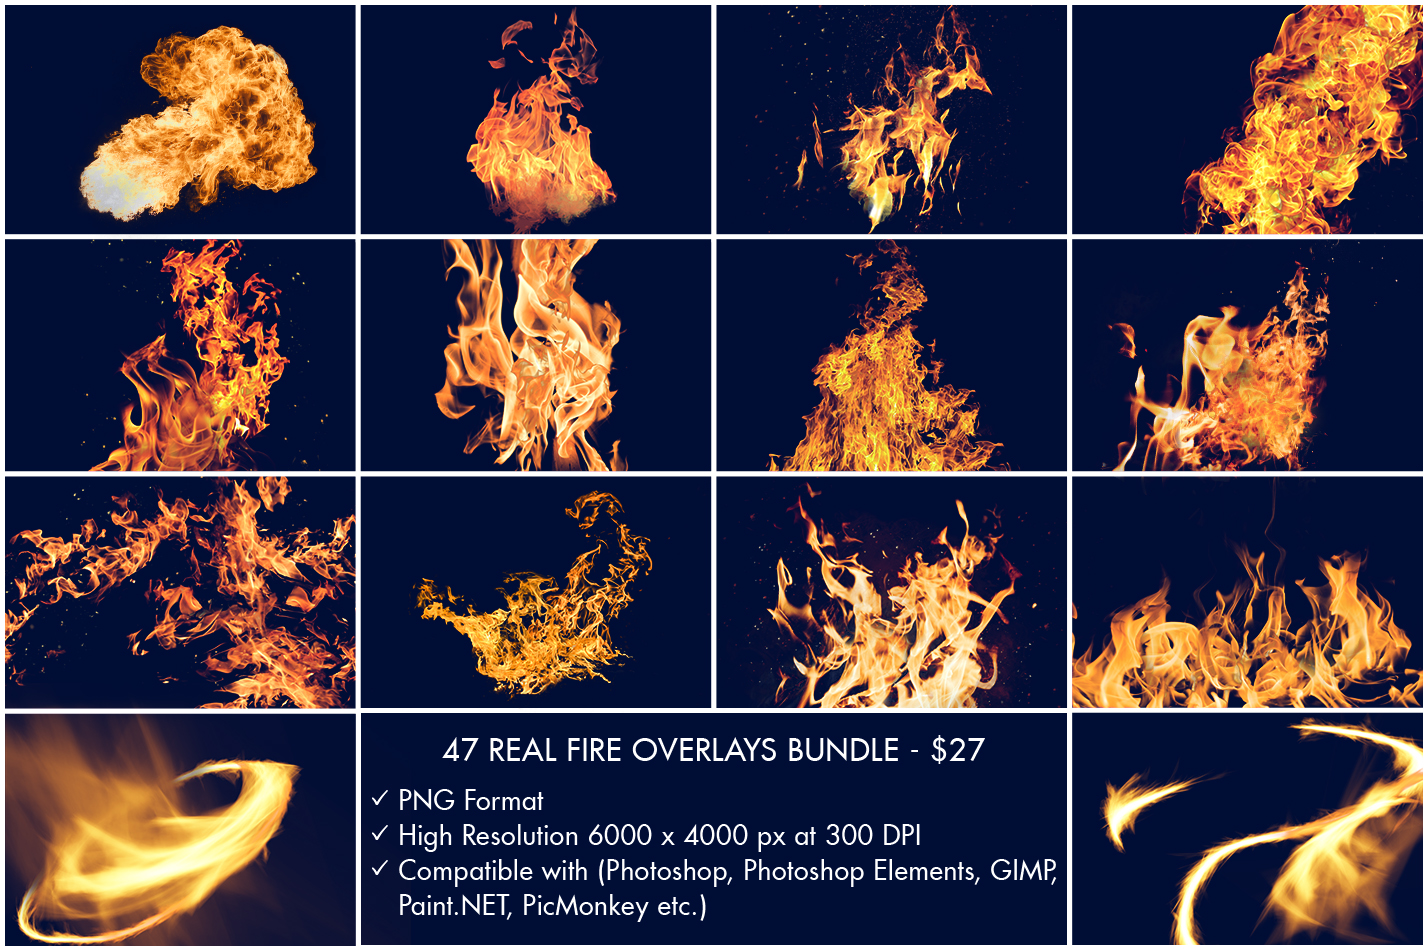 Laden Sie Die Kostenlose Feuer Overlays Herunter Feuer Overlay Png Fur Photoshop